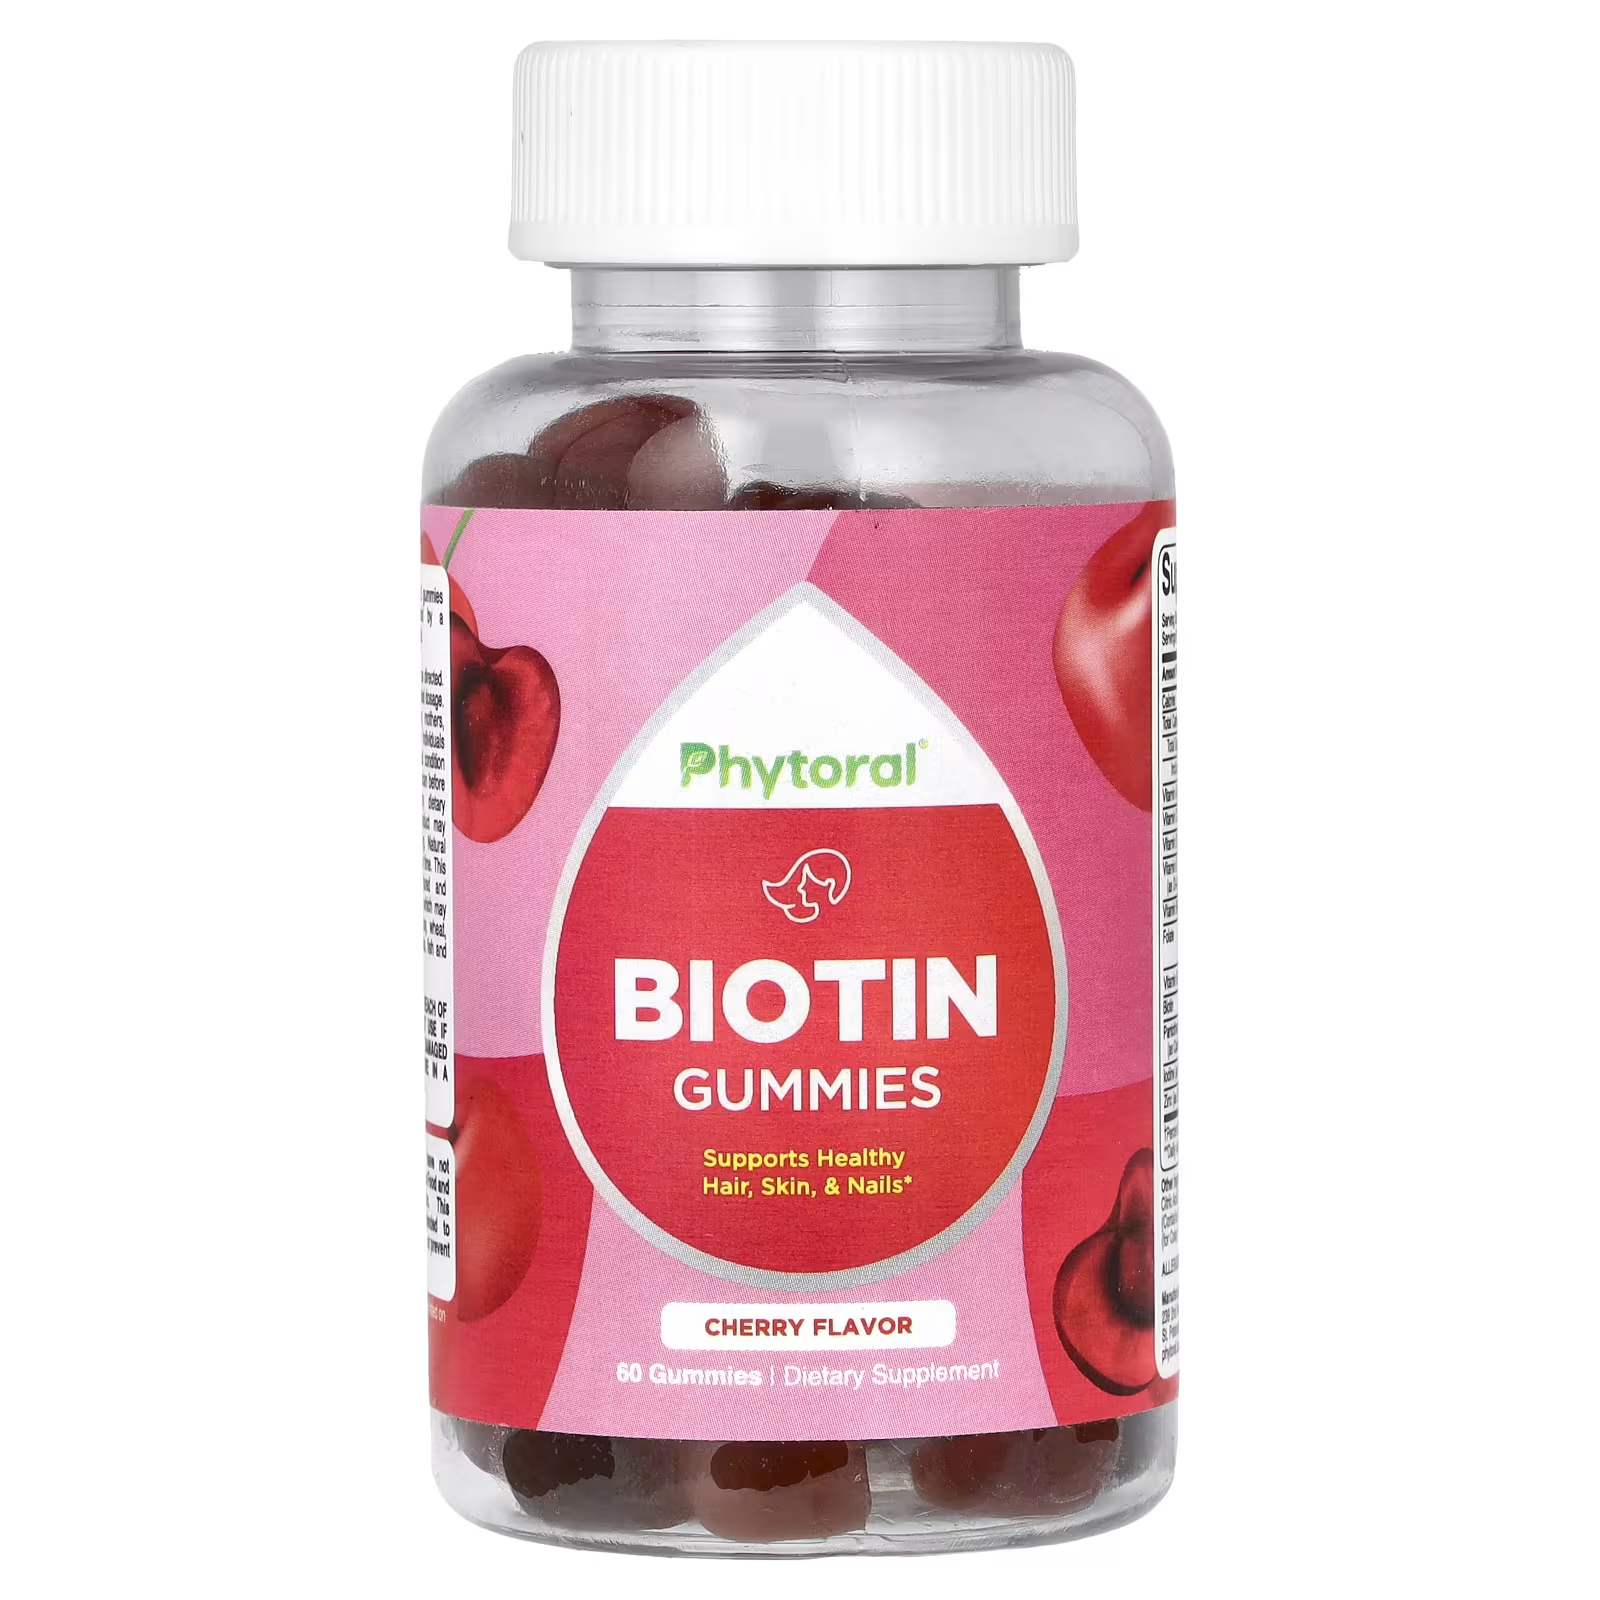 Пищевая добавка Phytoral с биотином, вишня, 60 жевательных конфет